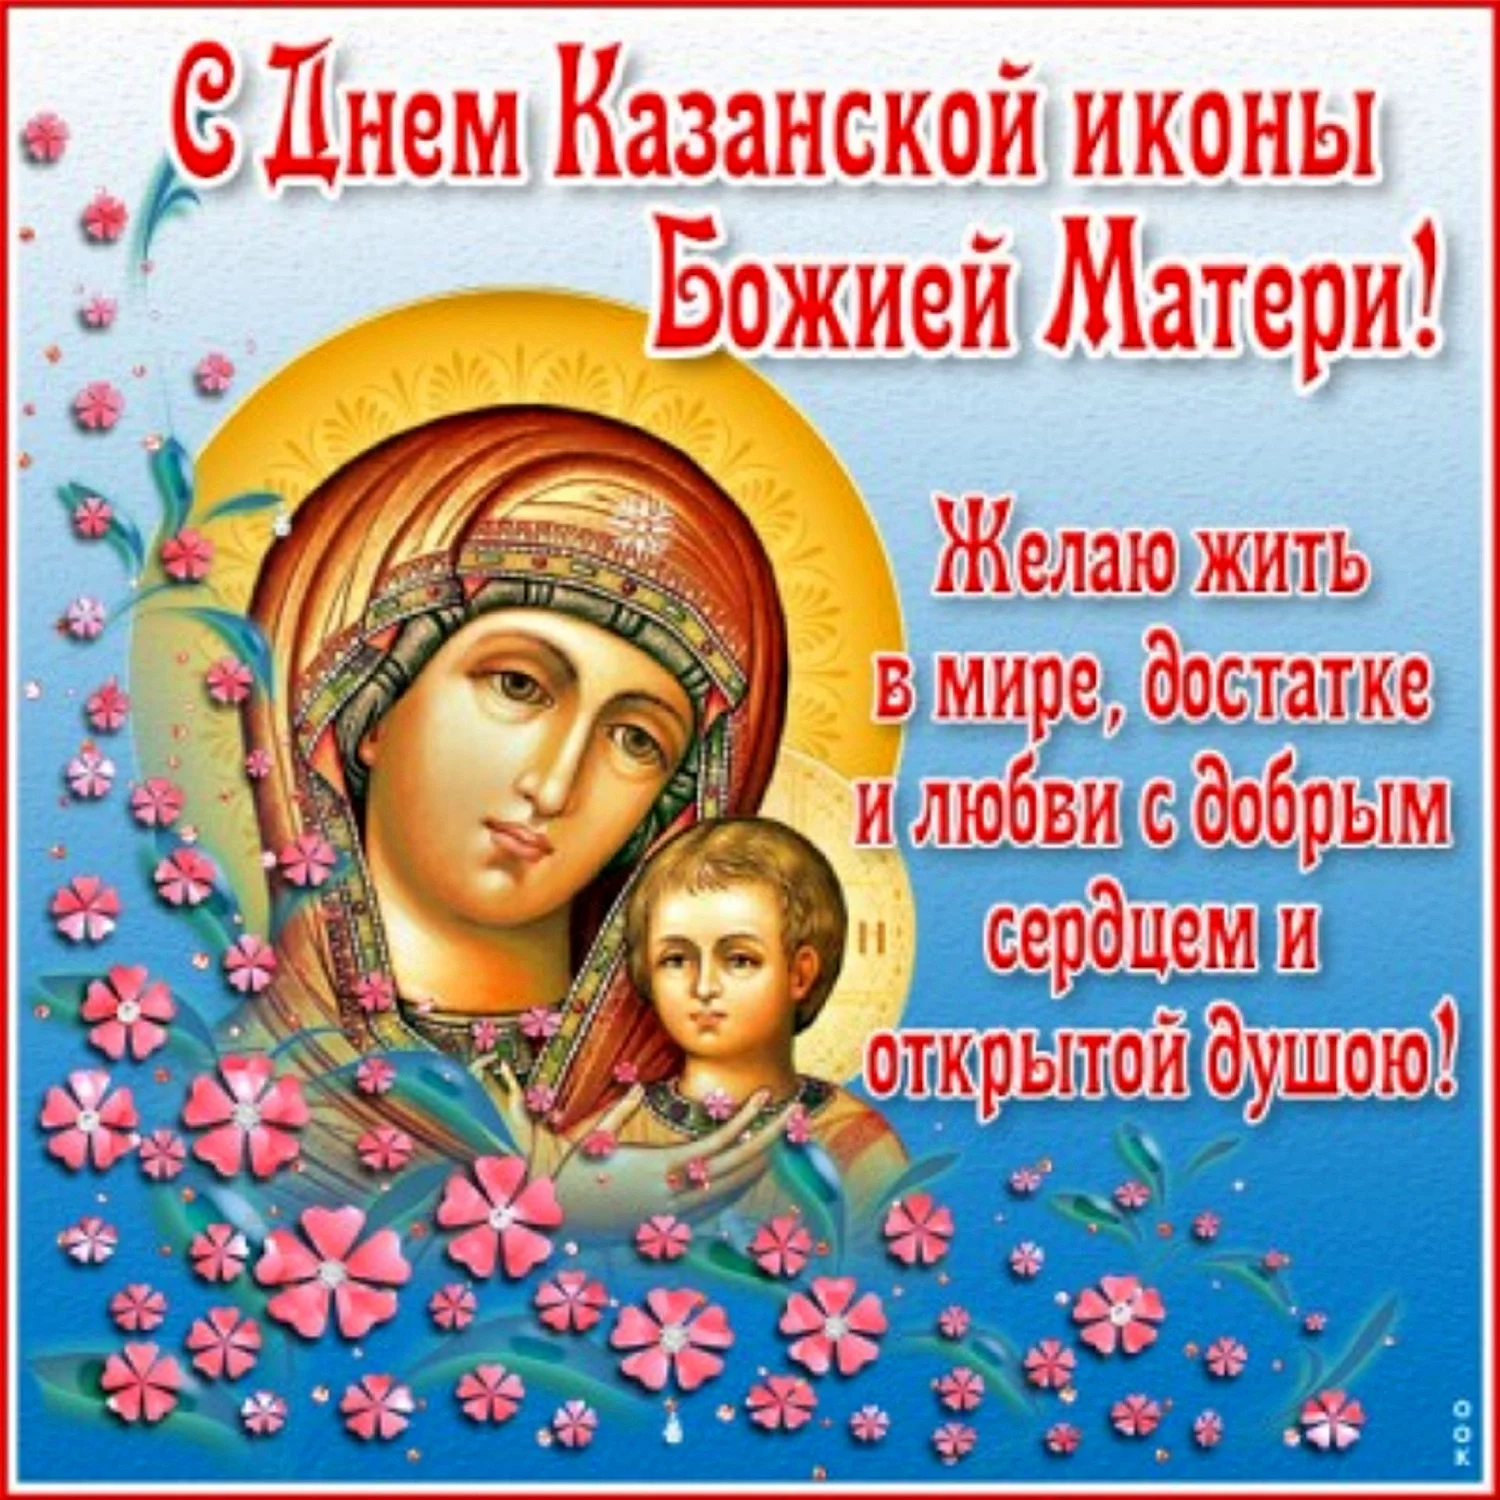 Необычная открытка День явления иконы Божией Матери в Казани